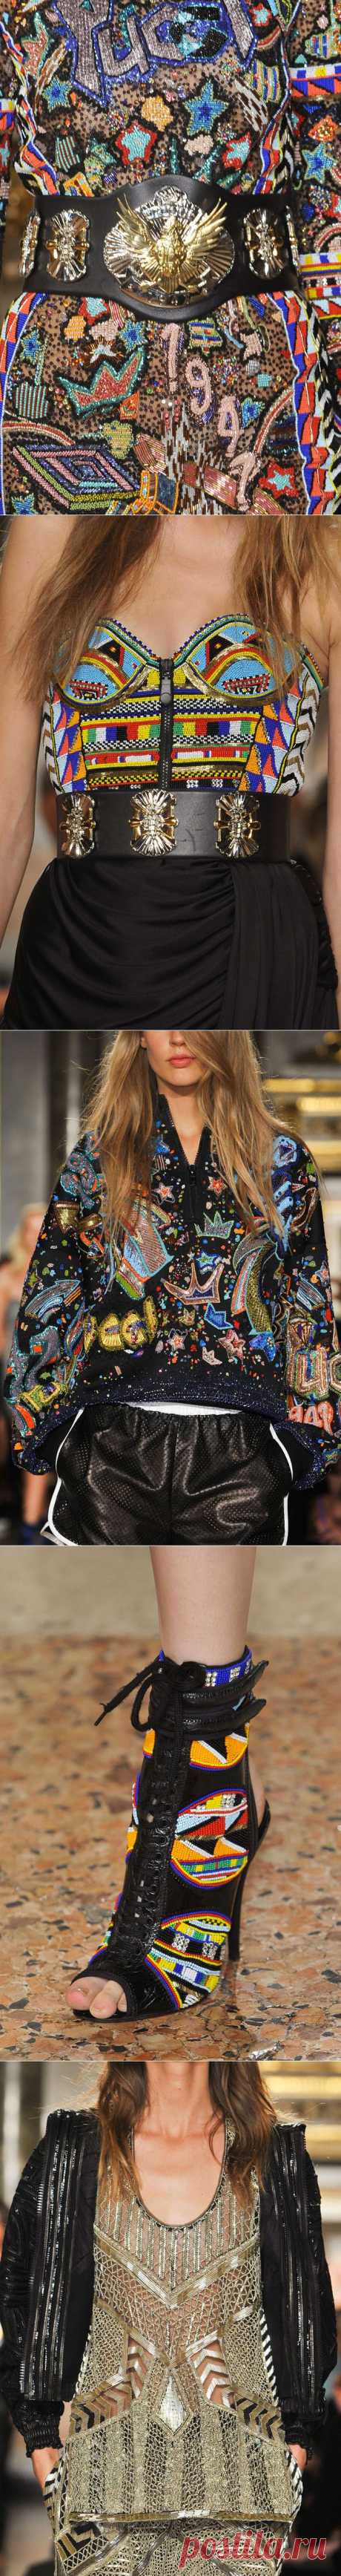 Вышивка бисером в новой коллекции Emilio Pucci весна-лето 2014.